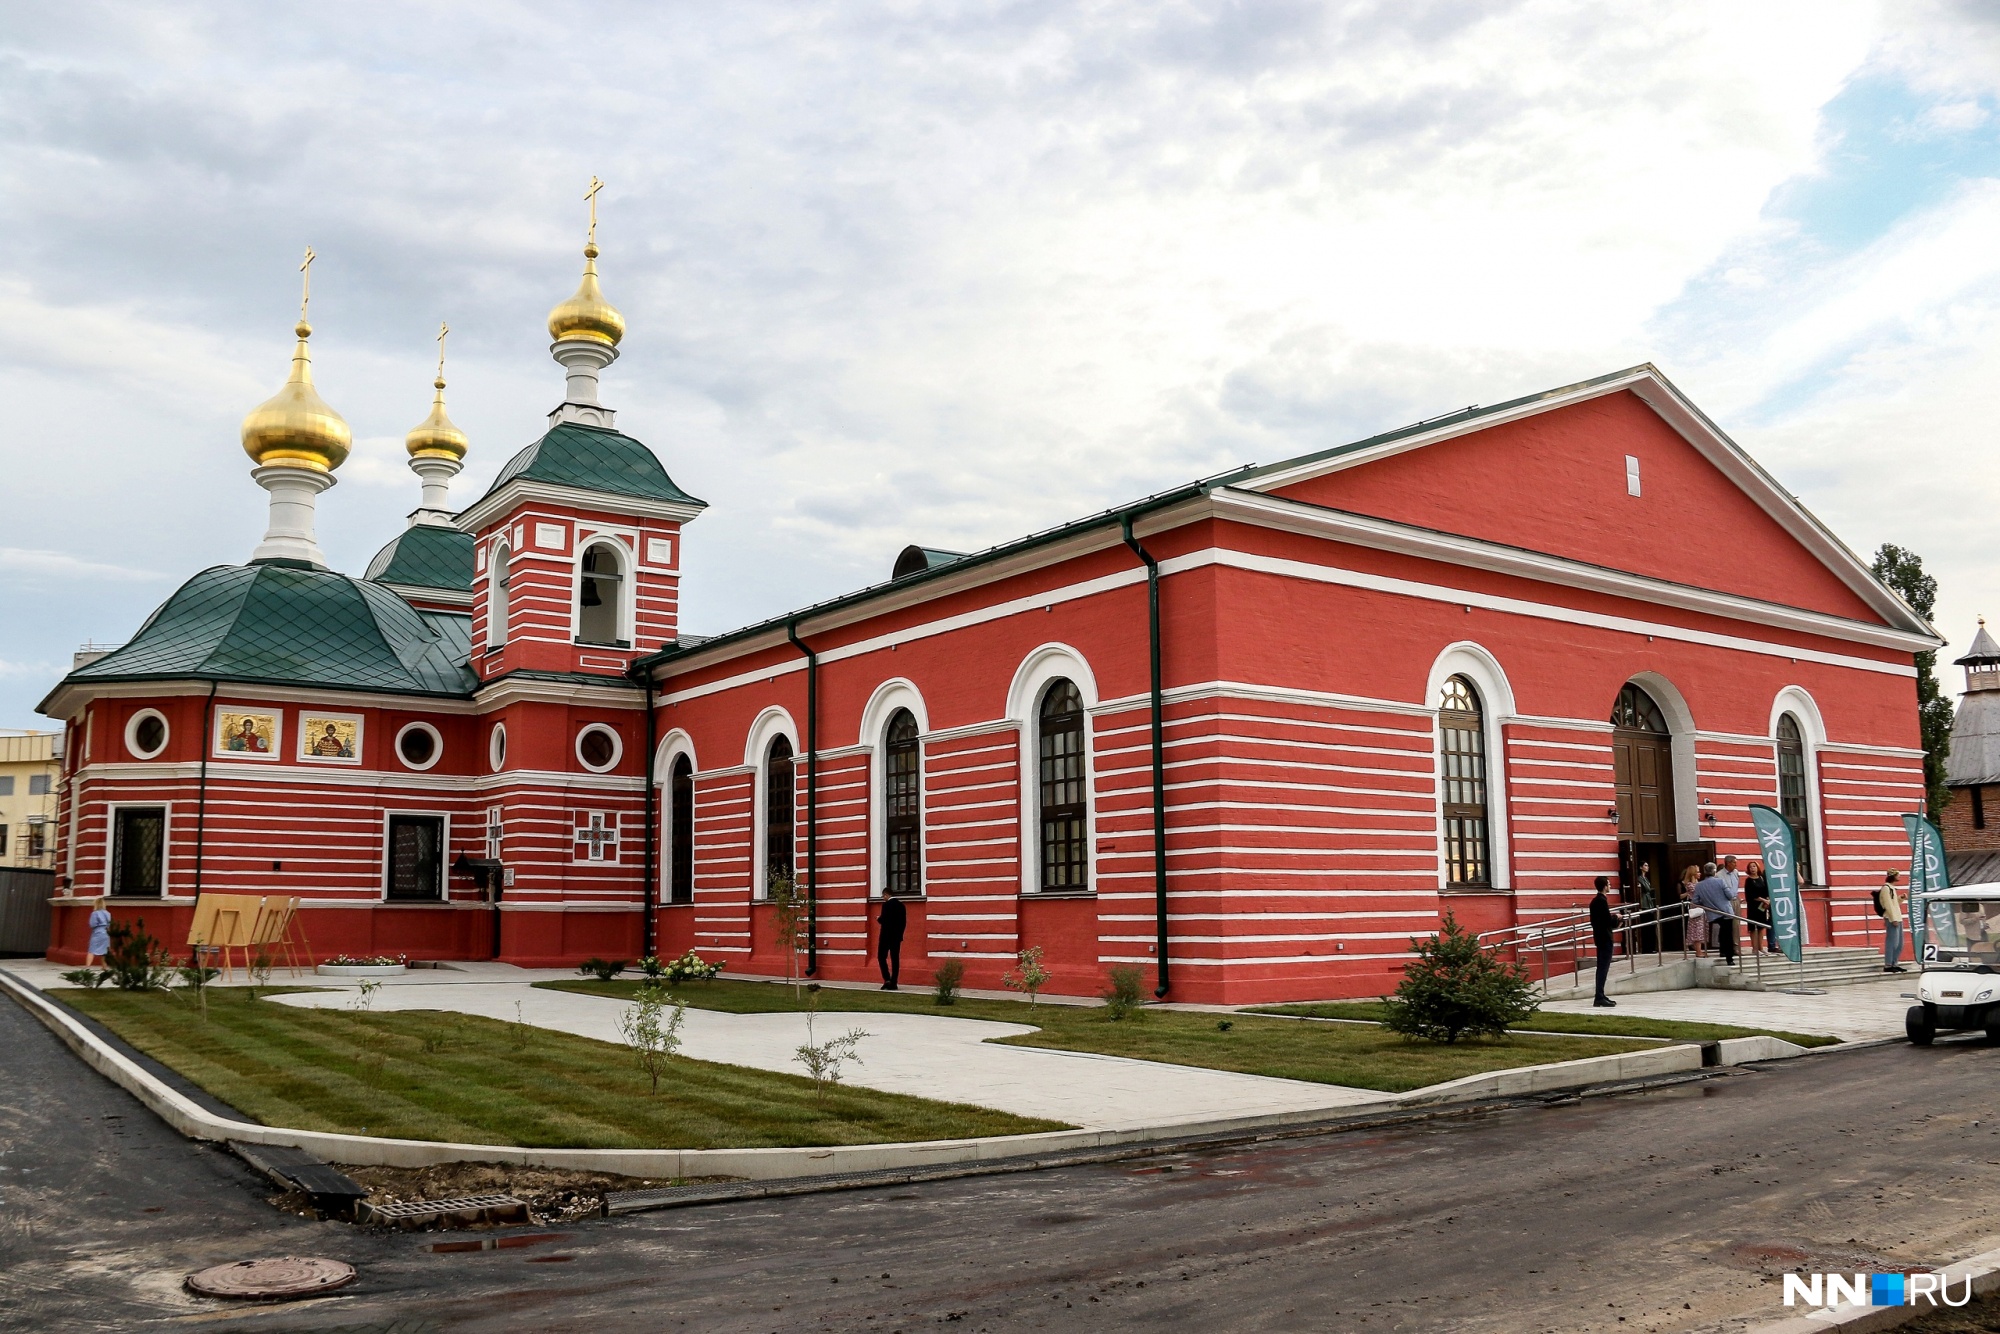 Более 21 млн рублей выделят на историческую выставку «Кузница Победы» в Нижнем Новгороде